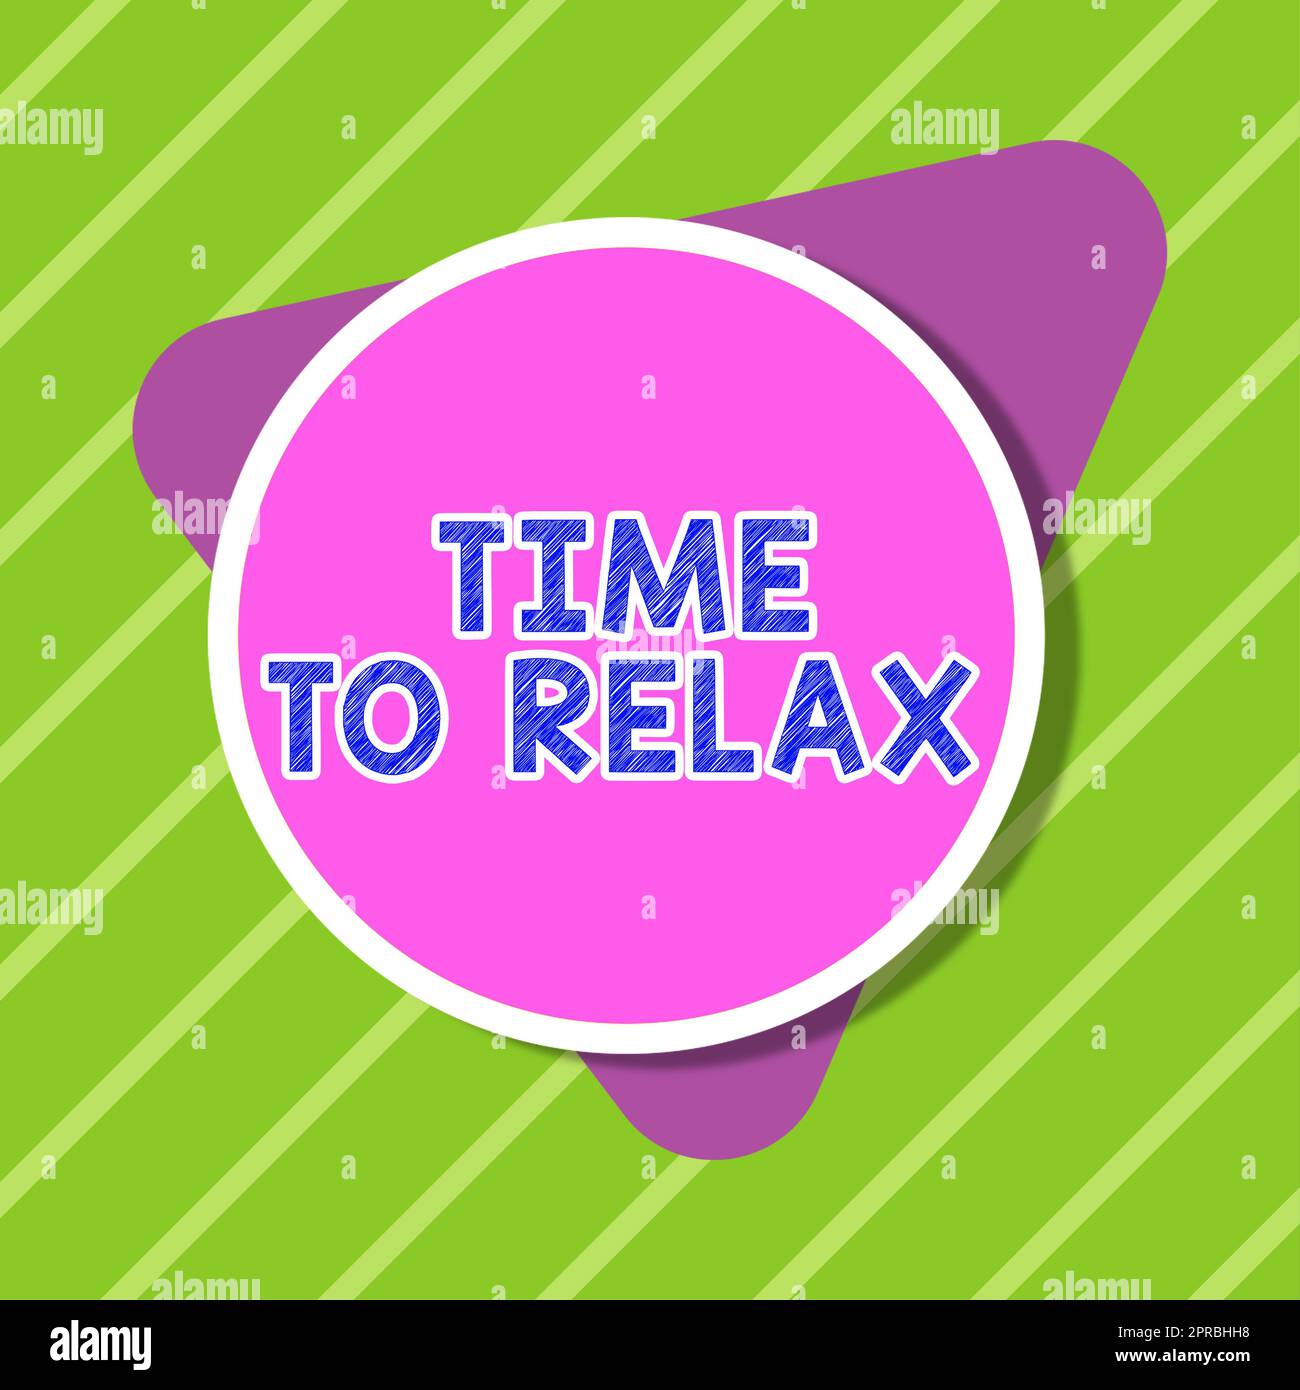 Schild mit der Aufschrift „Time to Relax“. Ein Wort für einen Entspannungsmoment für eine Pause bei der Arbeit oder ein Studium Freizeit Blank Circular und Triangle Shapes for Promotion of Business. Stockfoto